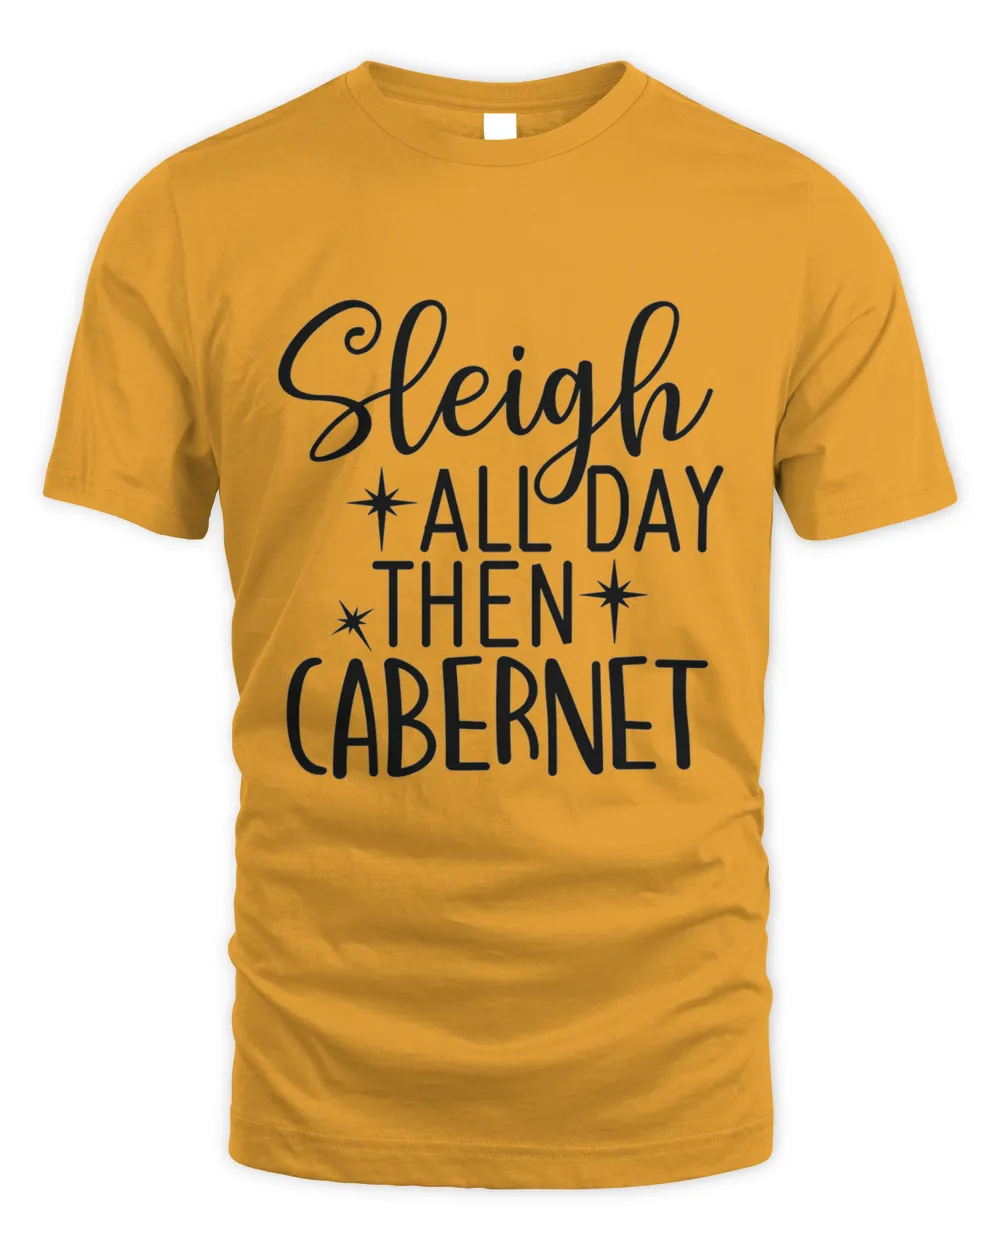 Sleigh All Day Then Cabernet, Men's & Women's Merry Christmas Shirt